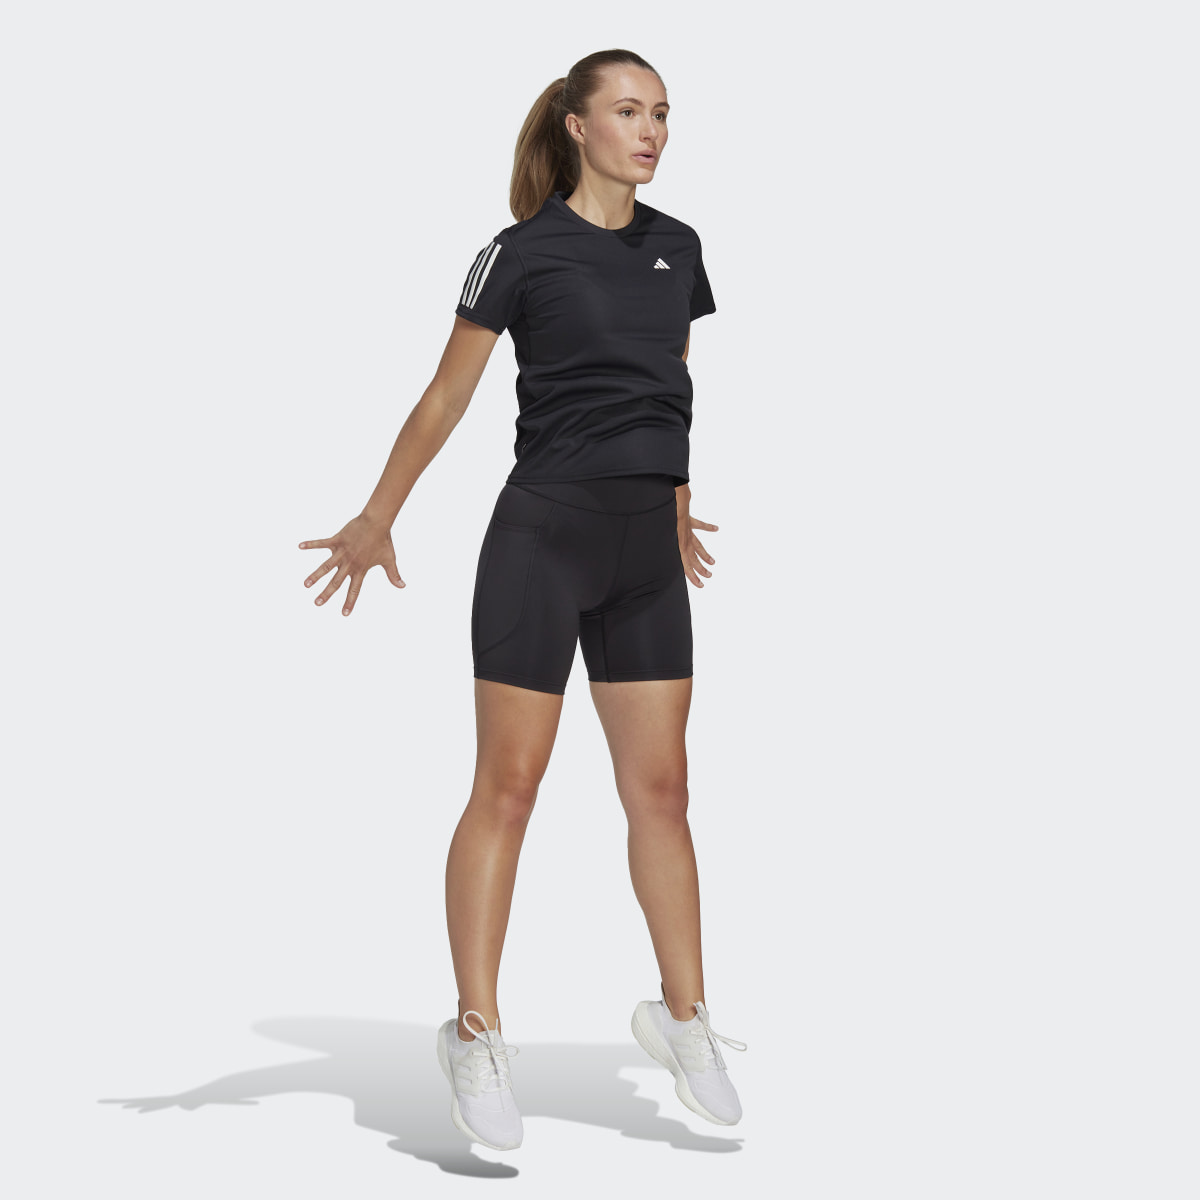 Adidas Own the Run T-Shirt. 4